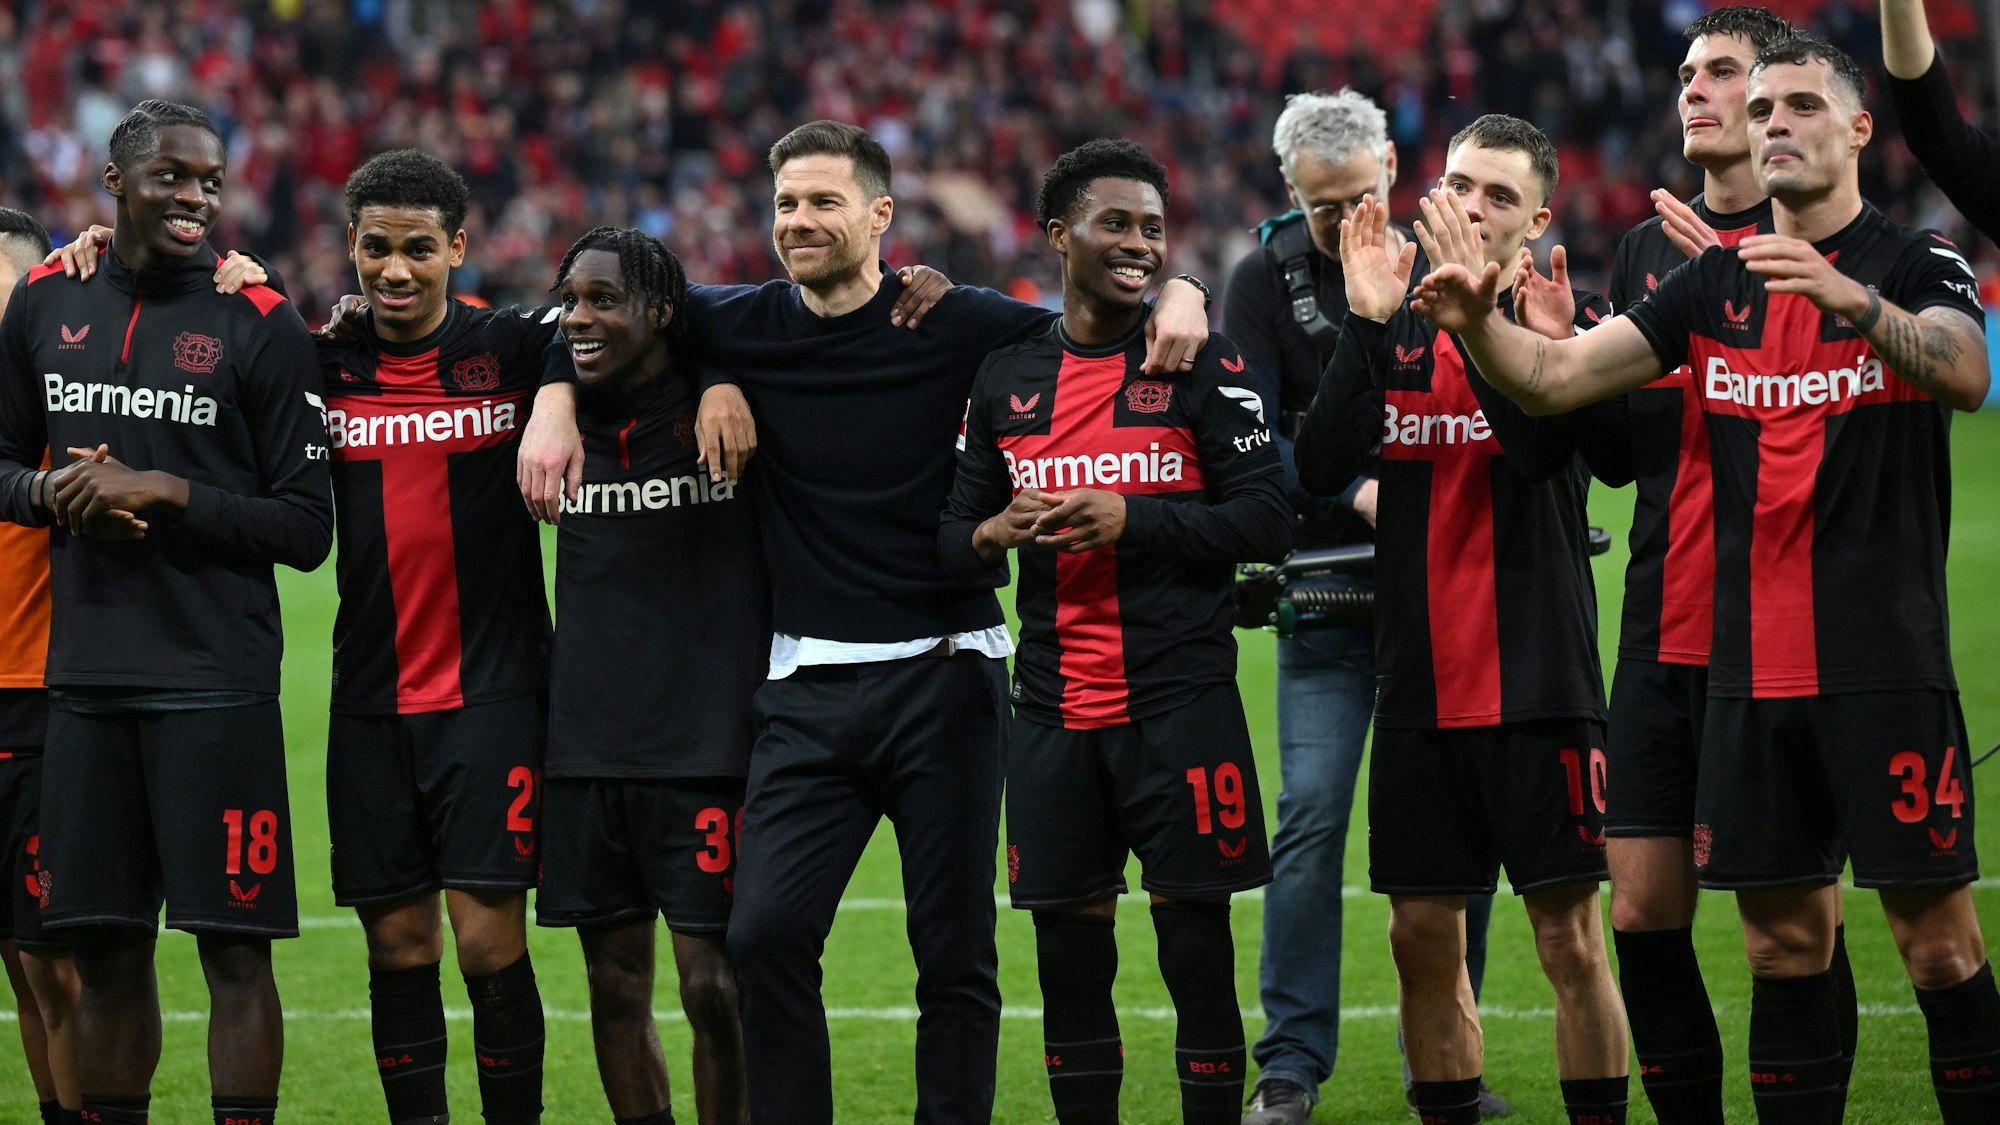 Xabi Alonso feiert nach dem Sieg von Bayer Leverkusen gegen die TSG Hoffenheim mit seinen Spielern Noah Mbamba, Amine Adli, Jeremie Frimpong, Nathan Tella, Florian Wirtz, Patrik Schick und Granit Xhaka.